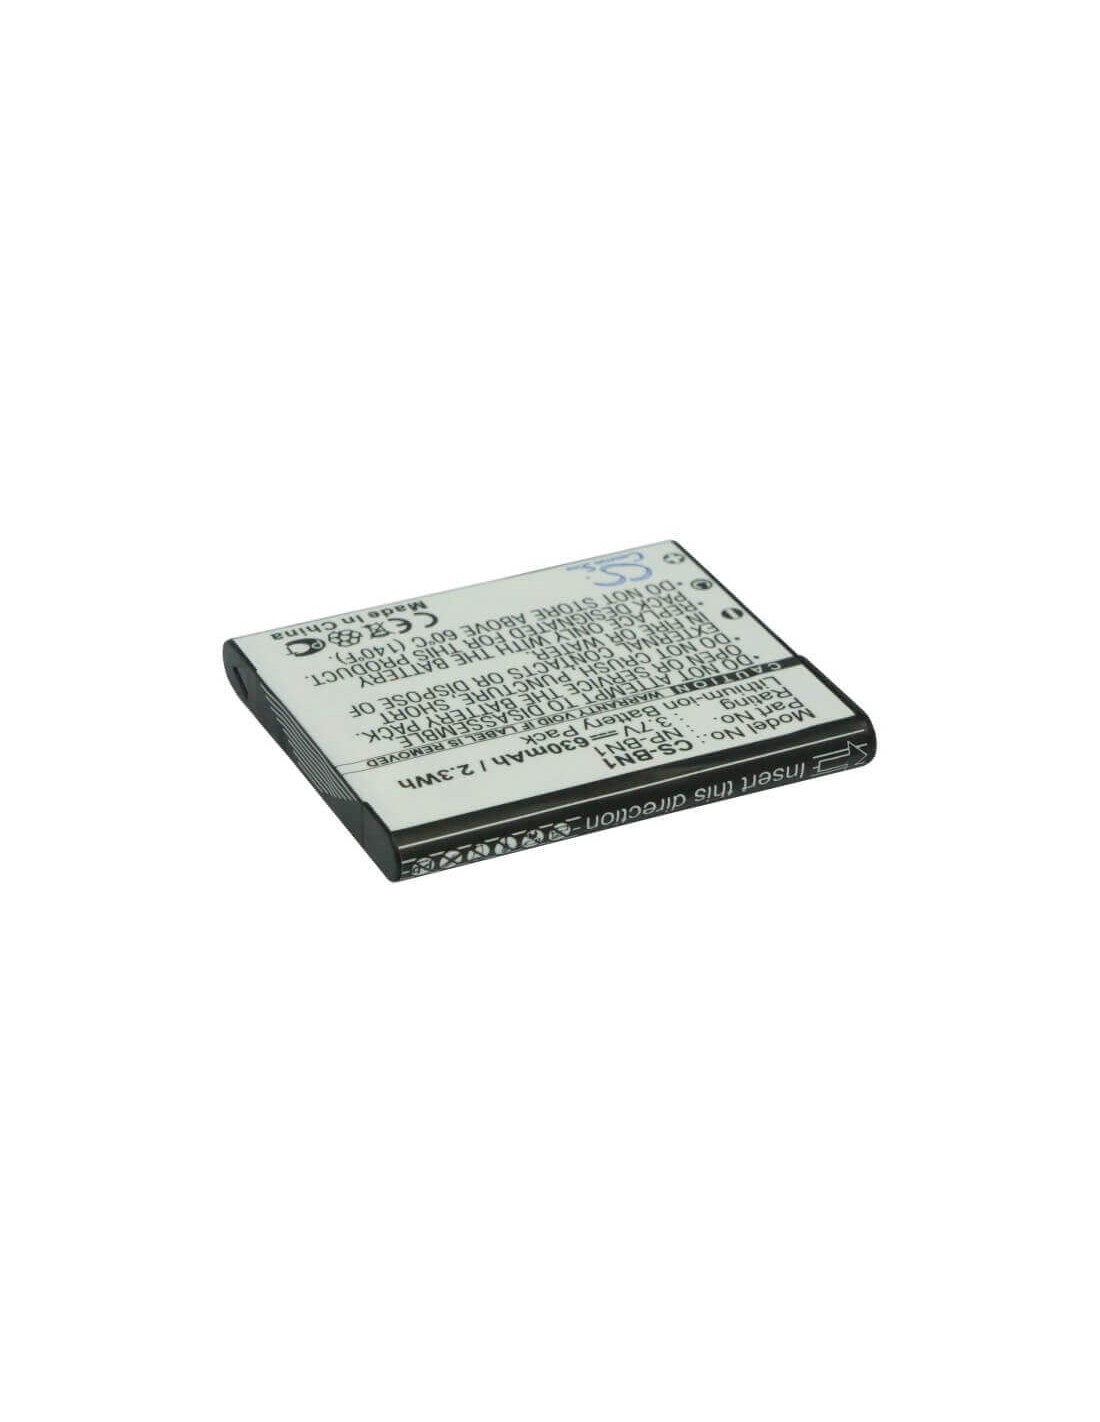 Battery for Sony Cyber-shot Dsc-t110p, Cyber-shot Dsc-t110s, 3.7V, 630mAh - 2.33Wh